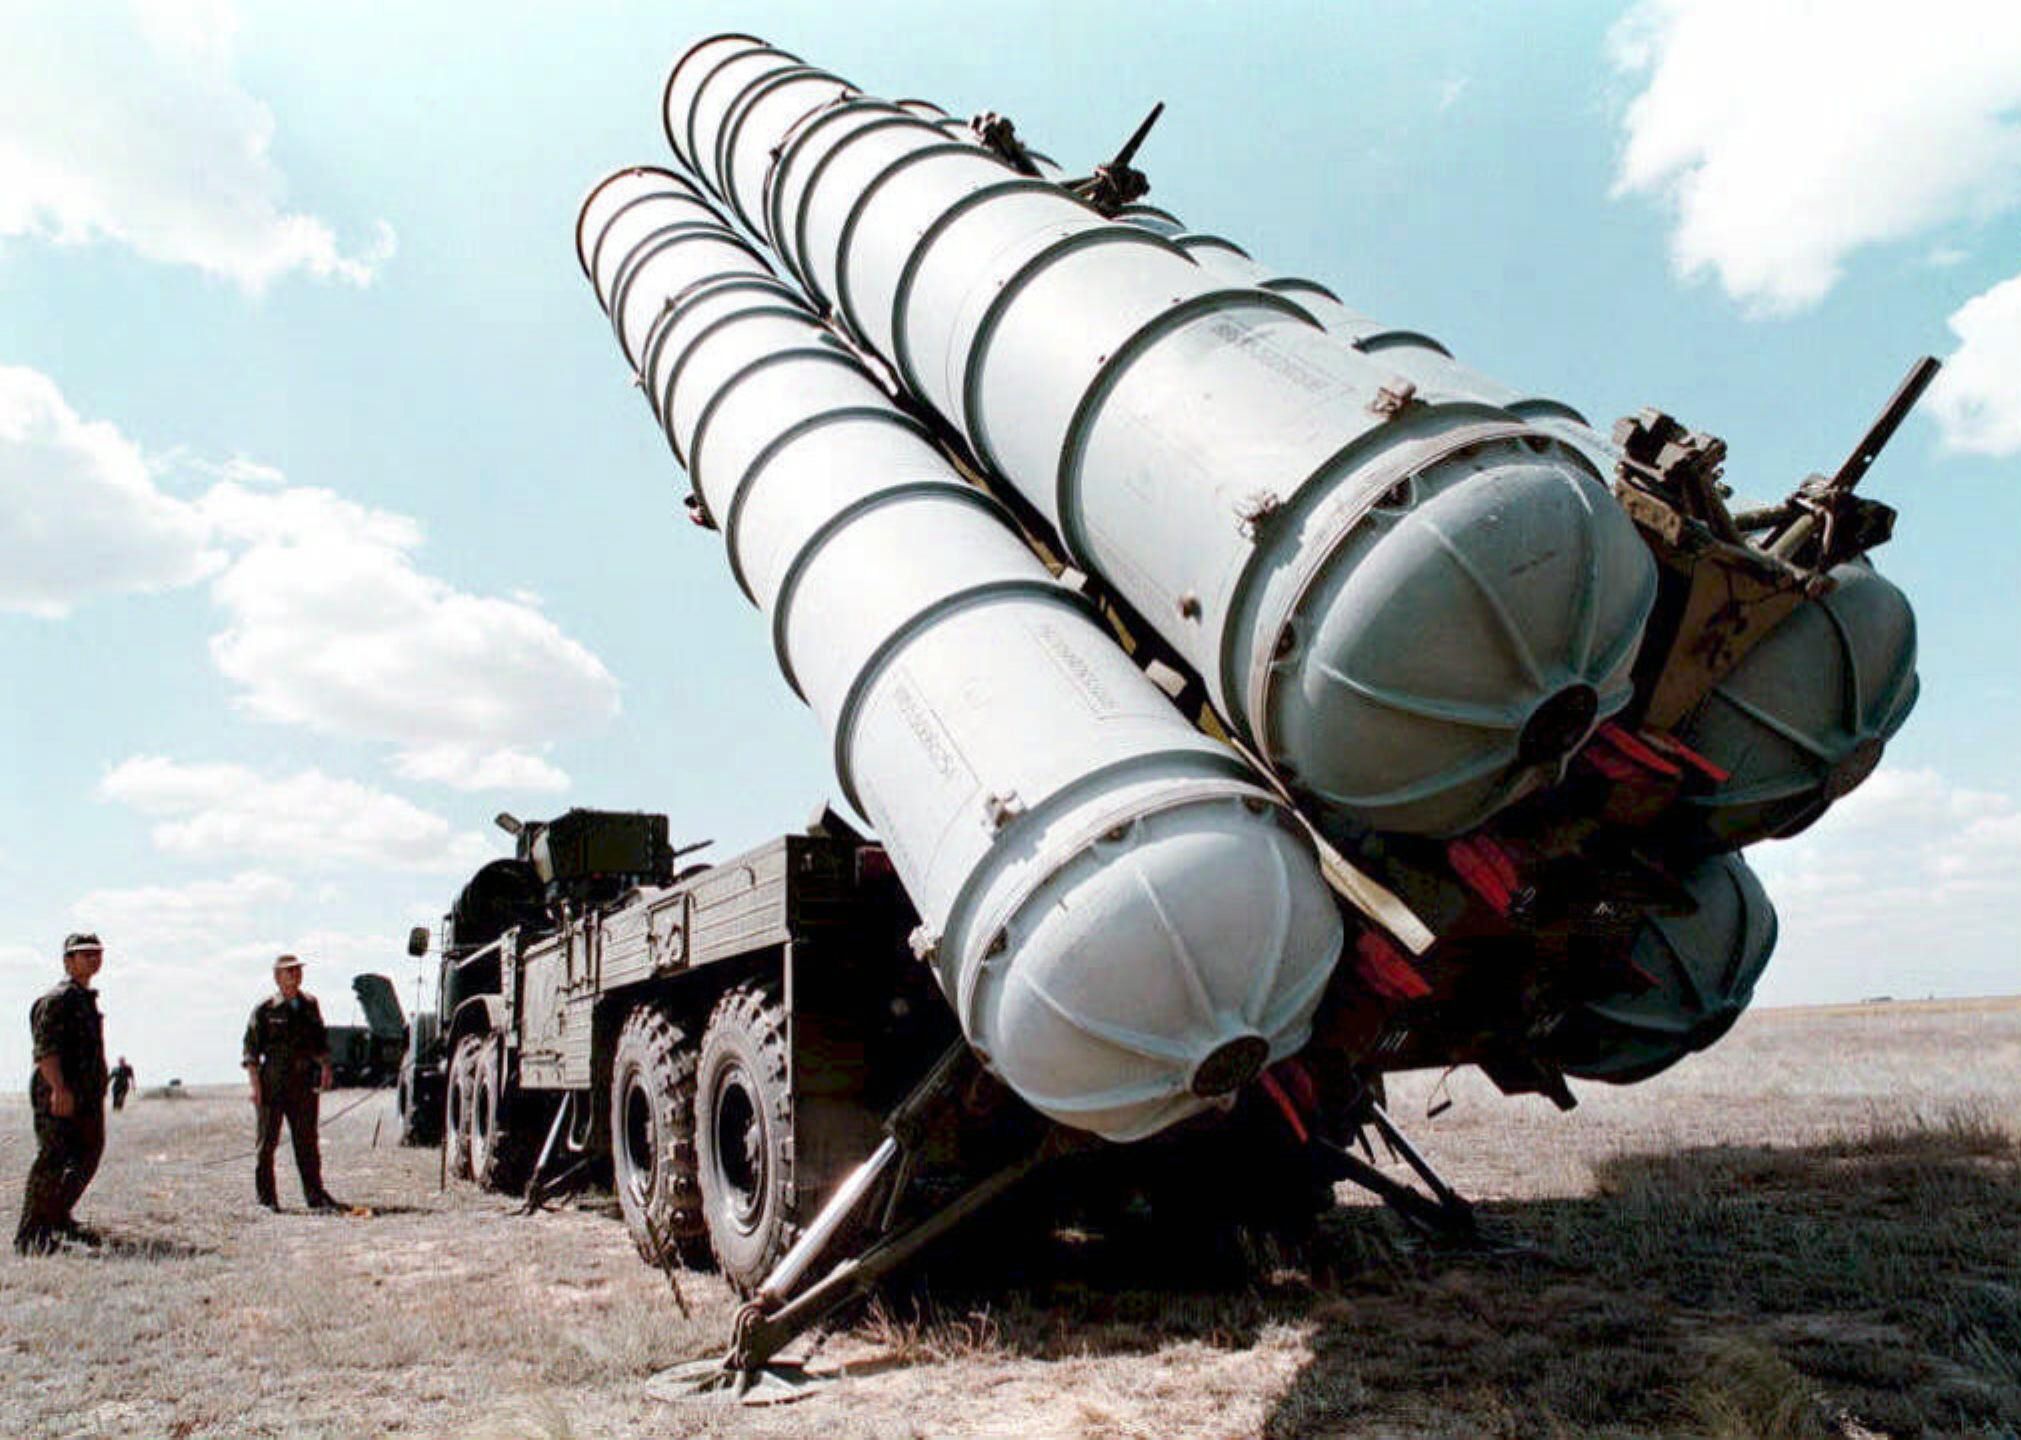 Tổ hợp tên lửa S-300 là một loạt các hệ thống tên lửa đất đối không tầm xa do Tổng công ty khoa học Công nghiệp Almaz-Antey Nga sản xuất.